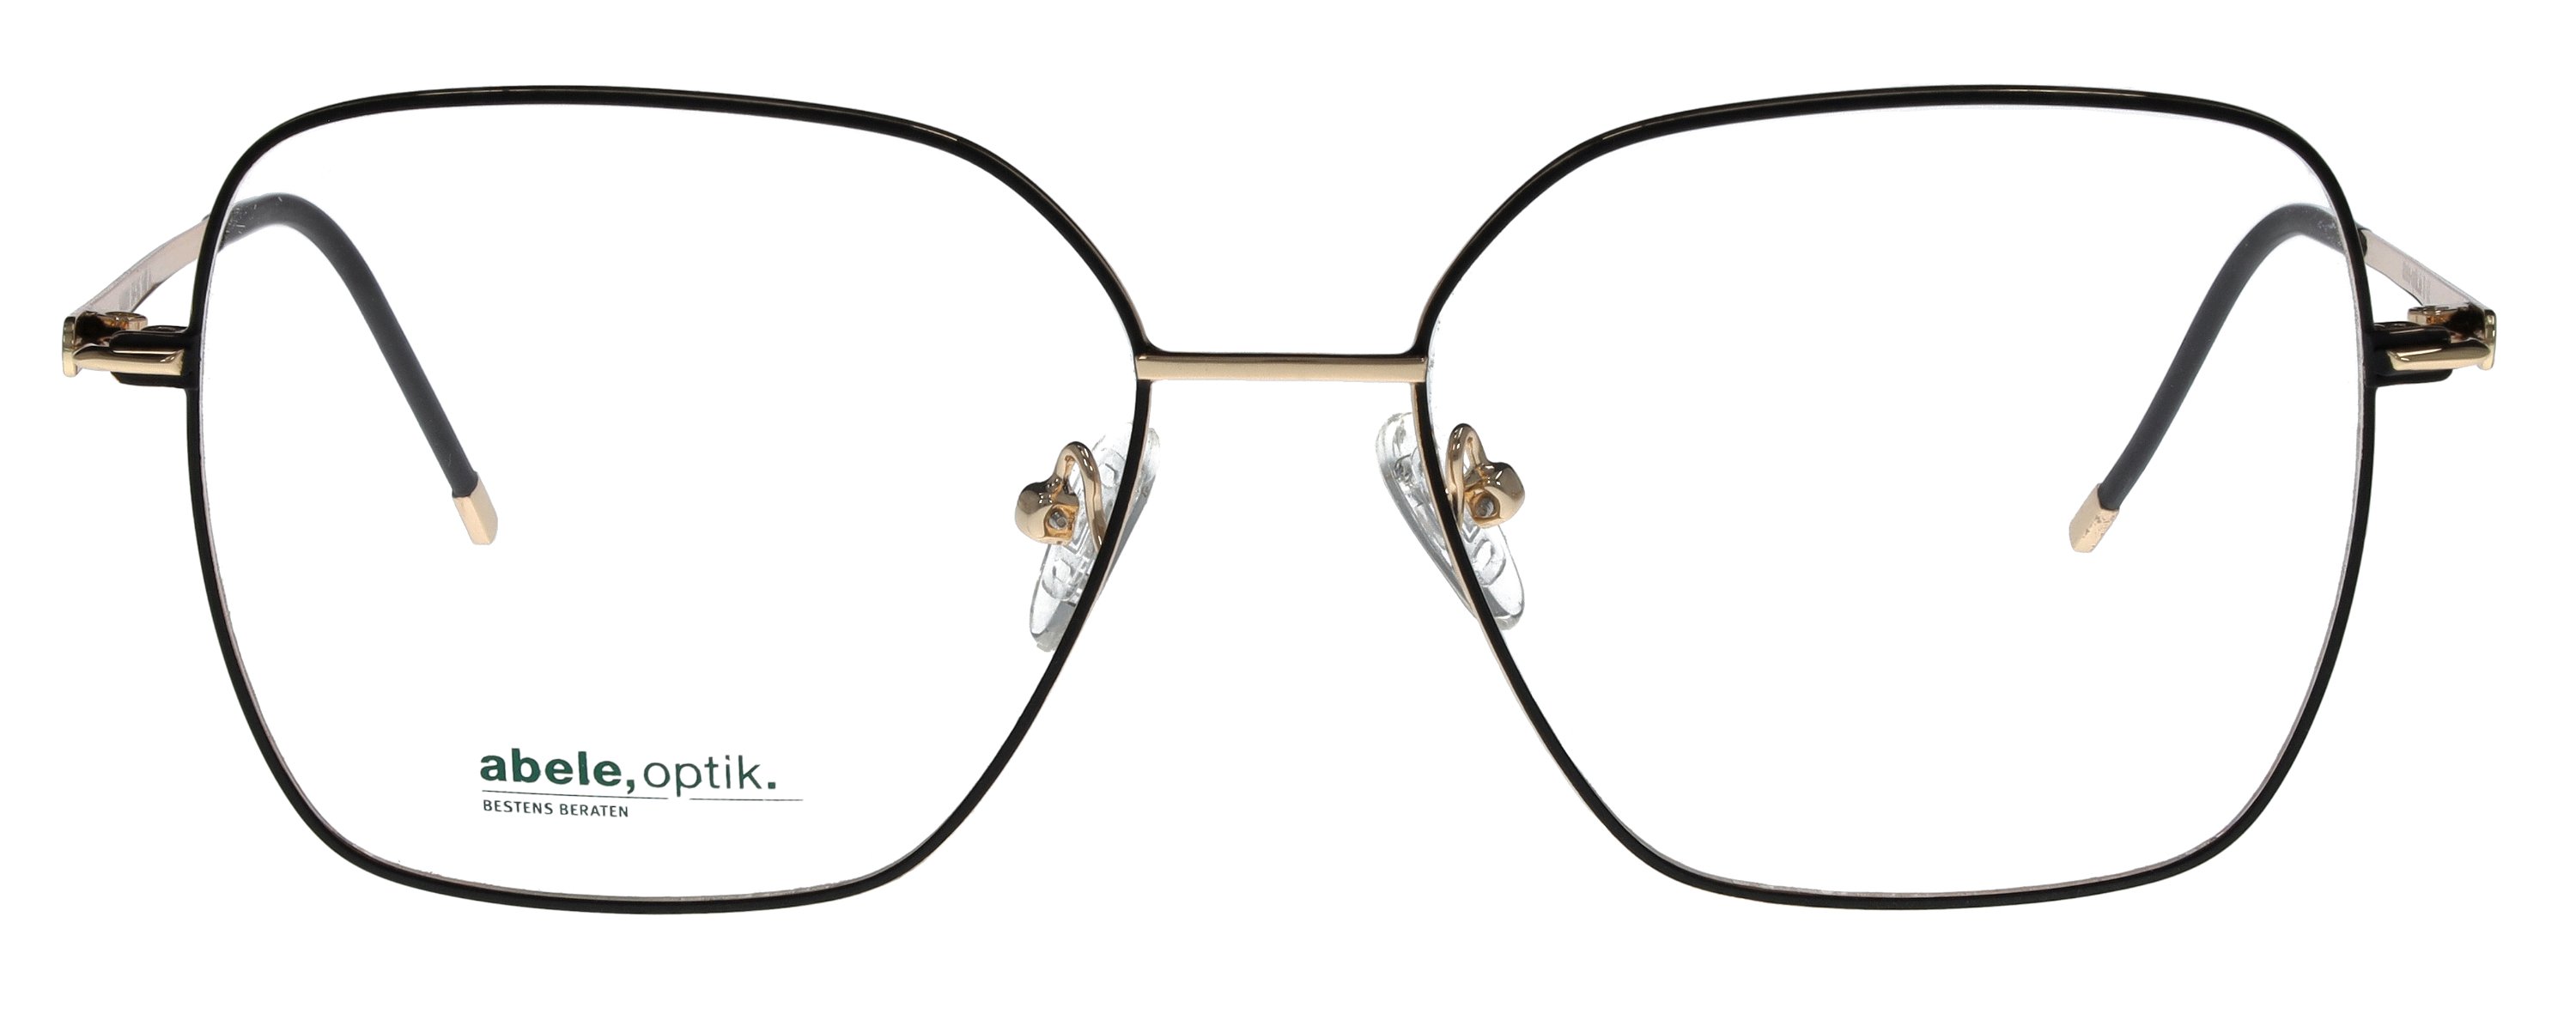 Das Bild zeigt die Korrektionsbrille 148801 von der Marke Abele Optik in schwarz.